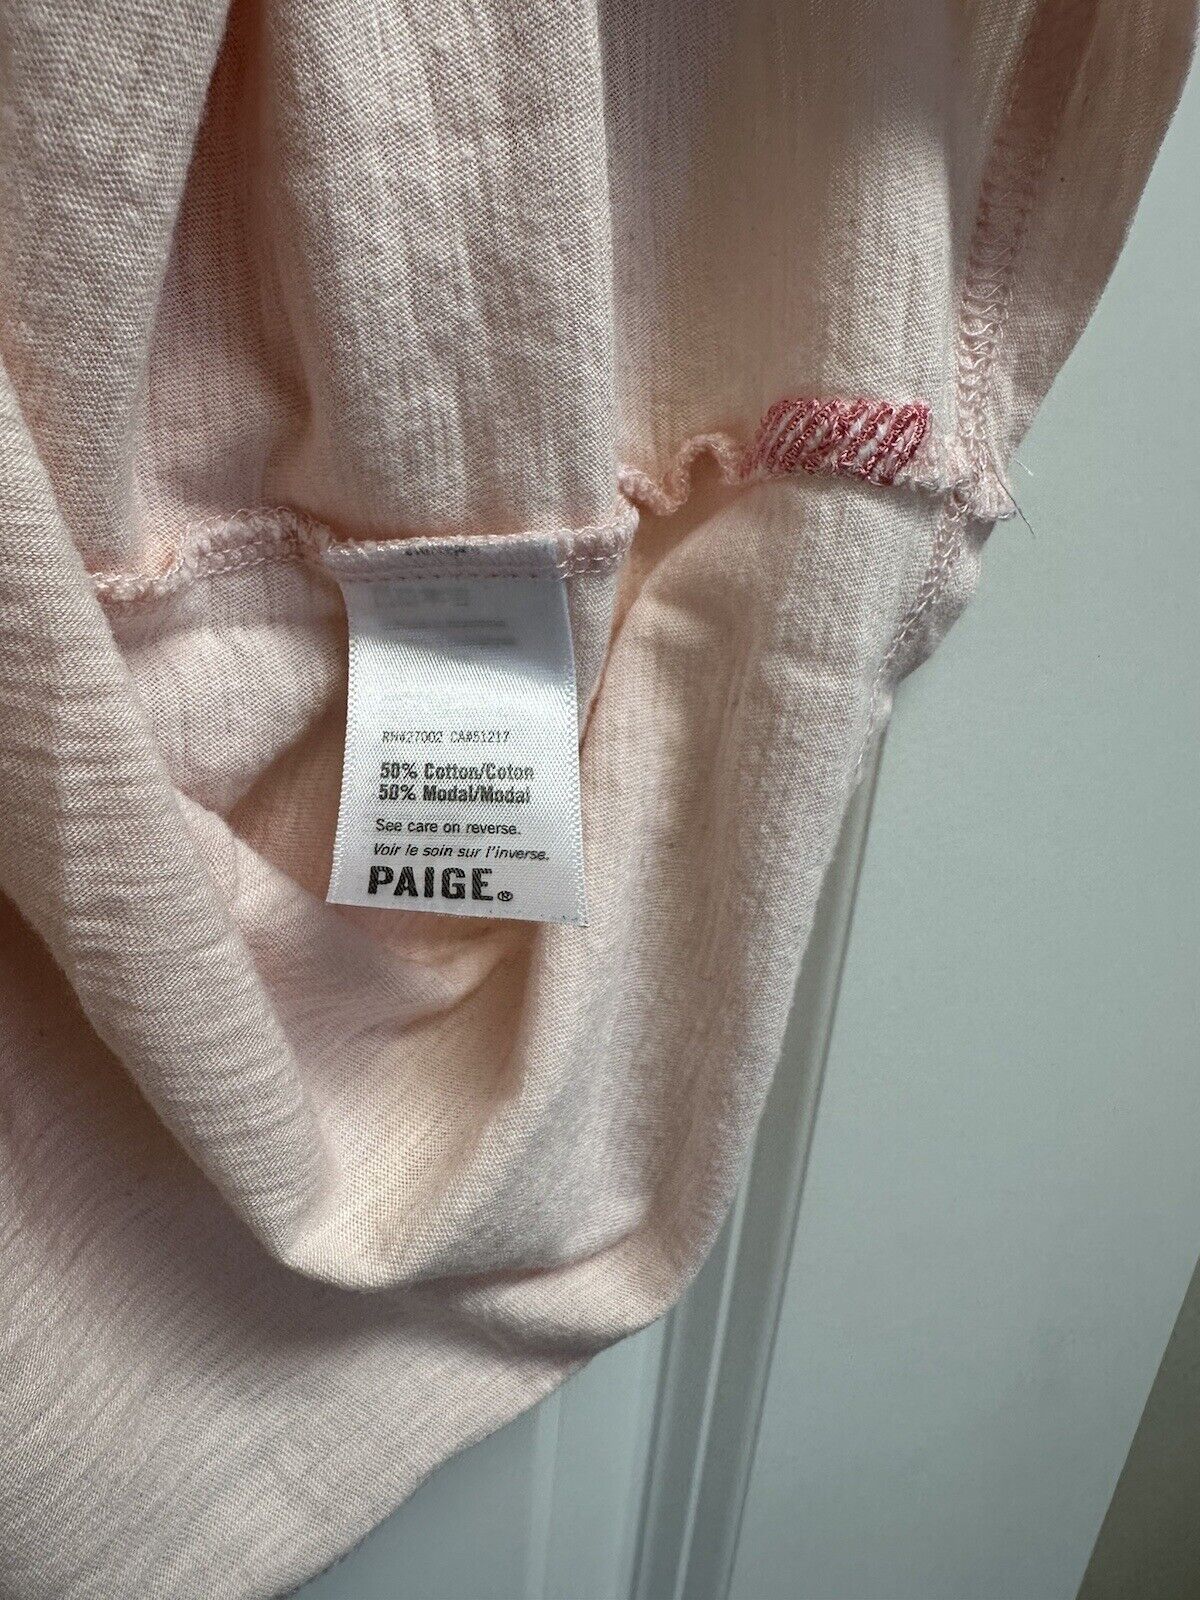 Paige Pink T-Shirt 50% Cotton, 50% Modal, Size S - image 3